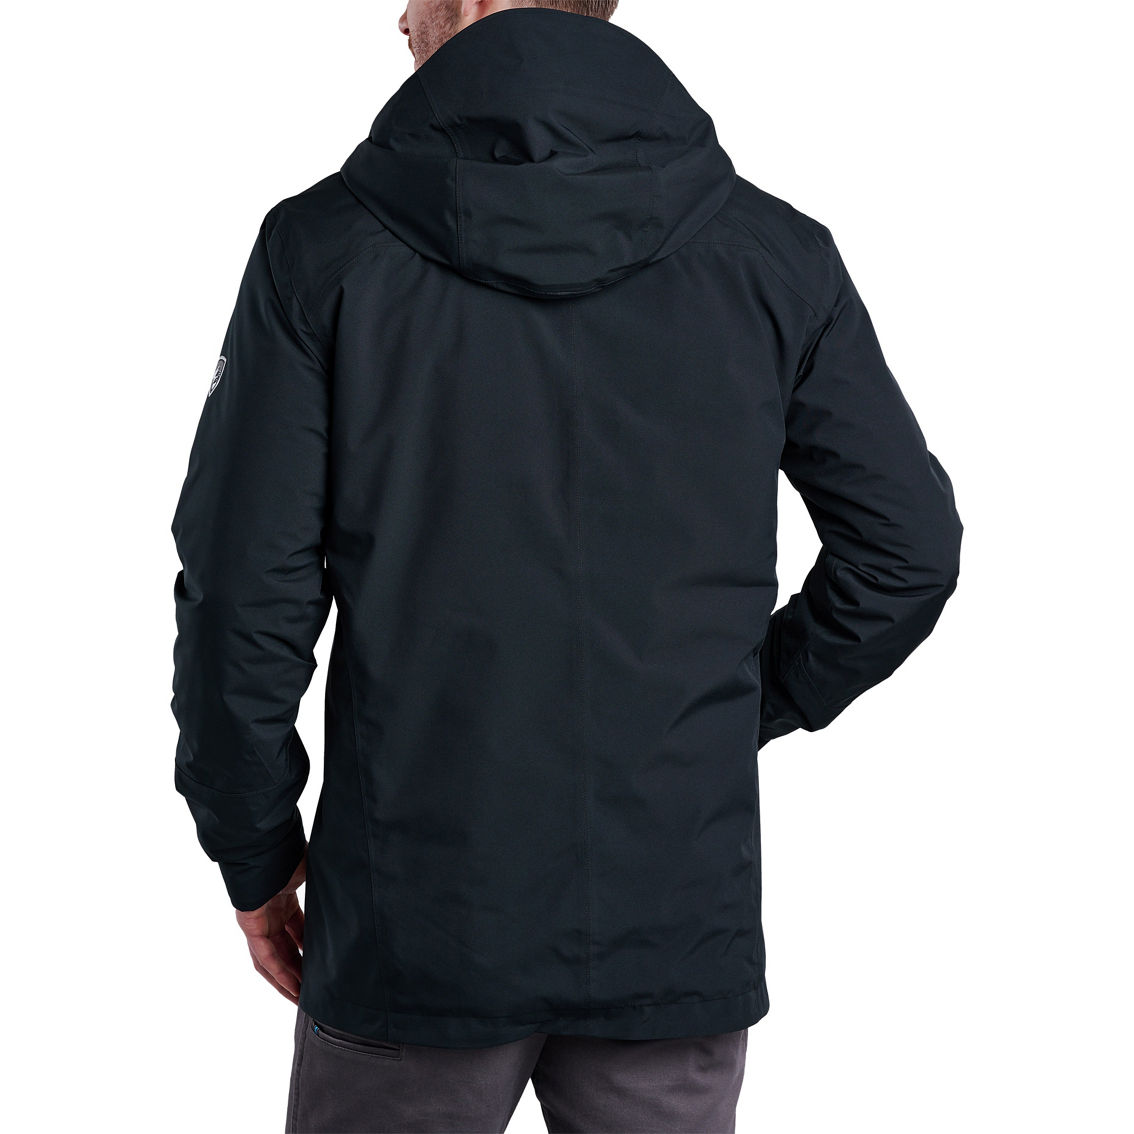 Kuhl Stretch Voyagr Insulated Jacket - Image 2 of 3